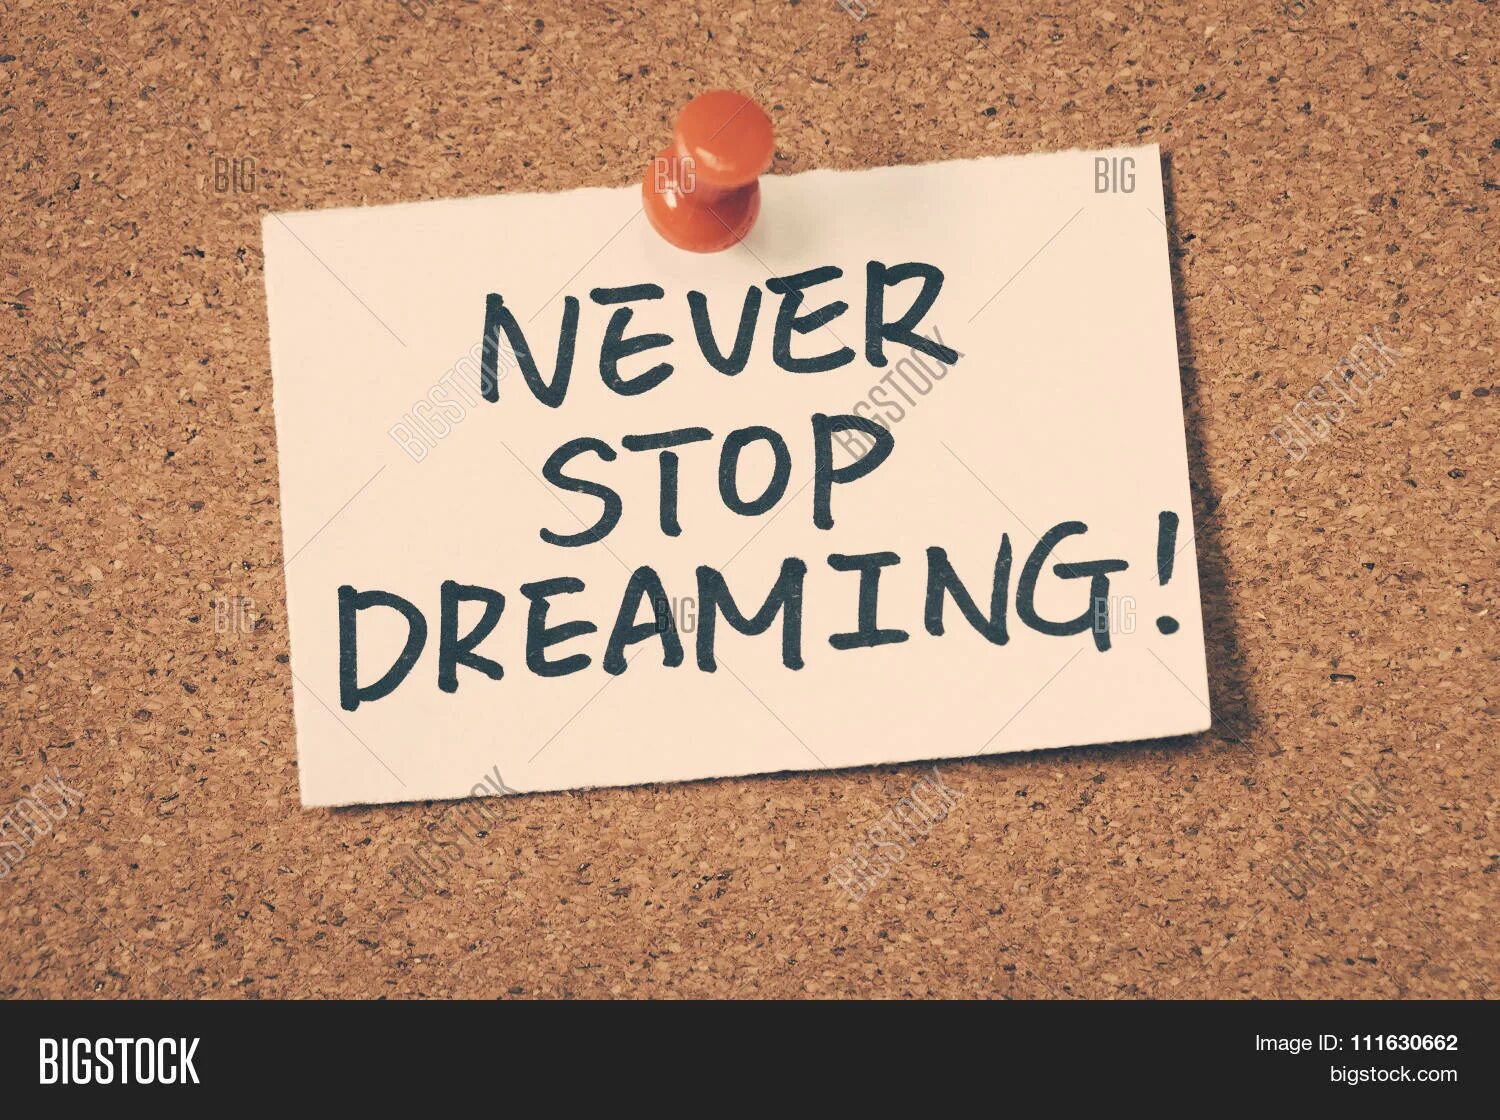 Never dreamed перевод. Невер стоп дриминг. Никогда не переставай мечтать. Never stop обои. Не переставай мечтать обои.